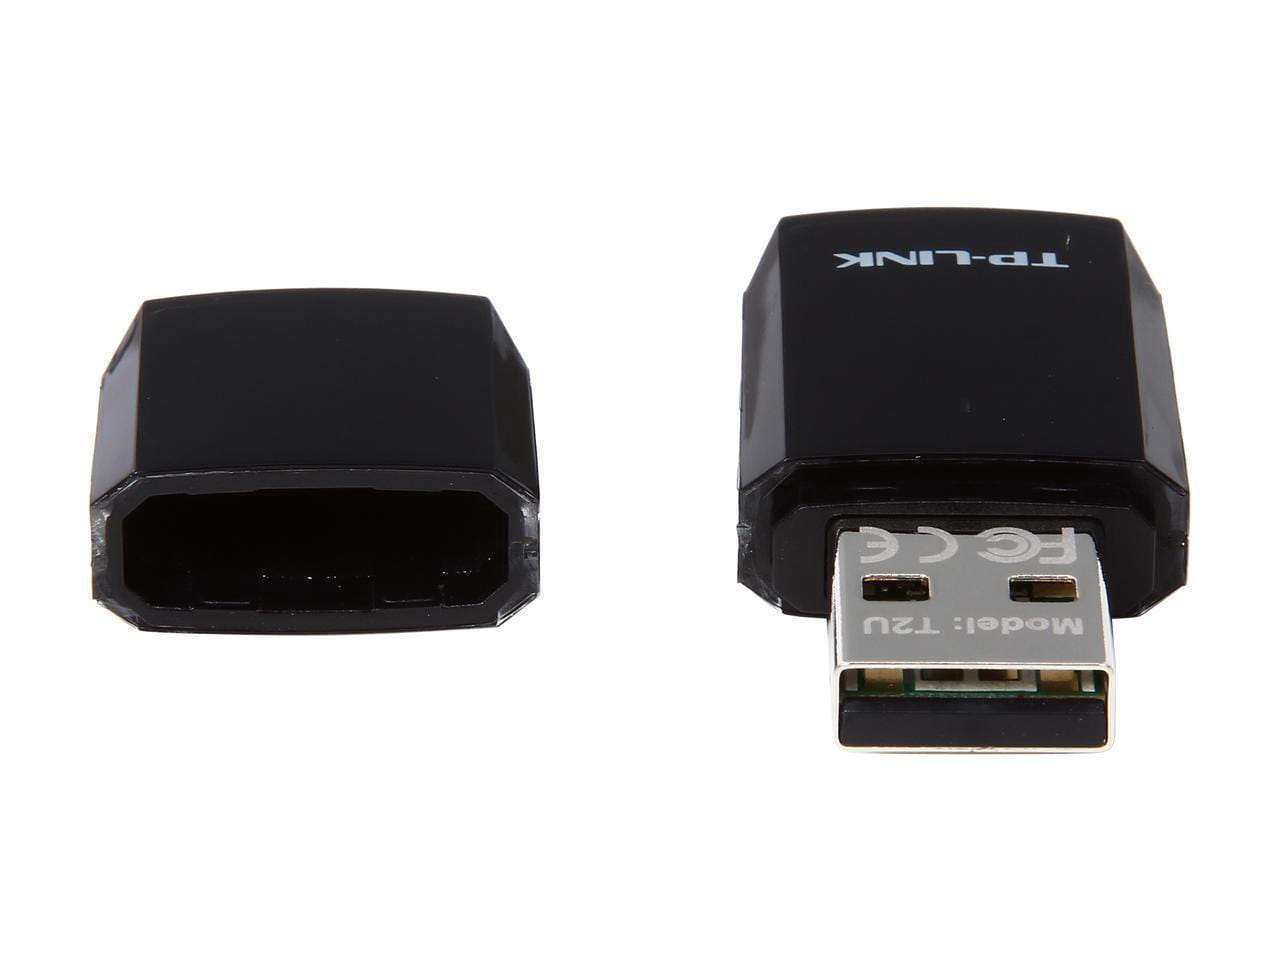 USB TP-LINK Archer T2U / 600Mbps /